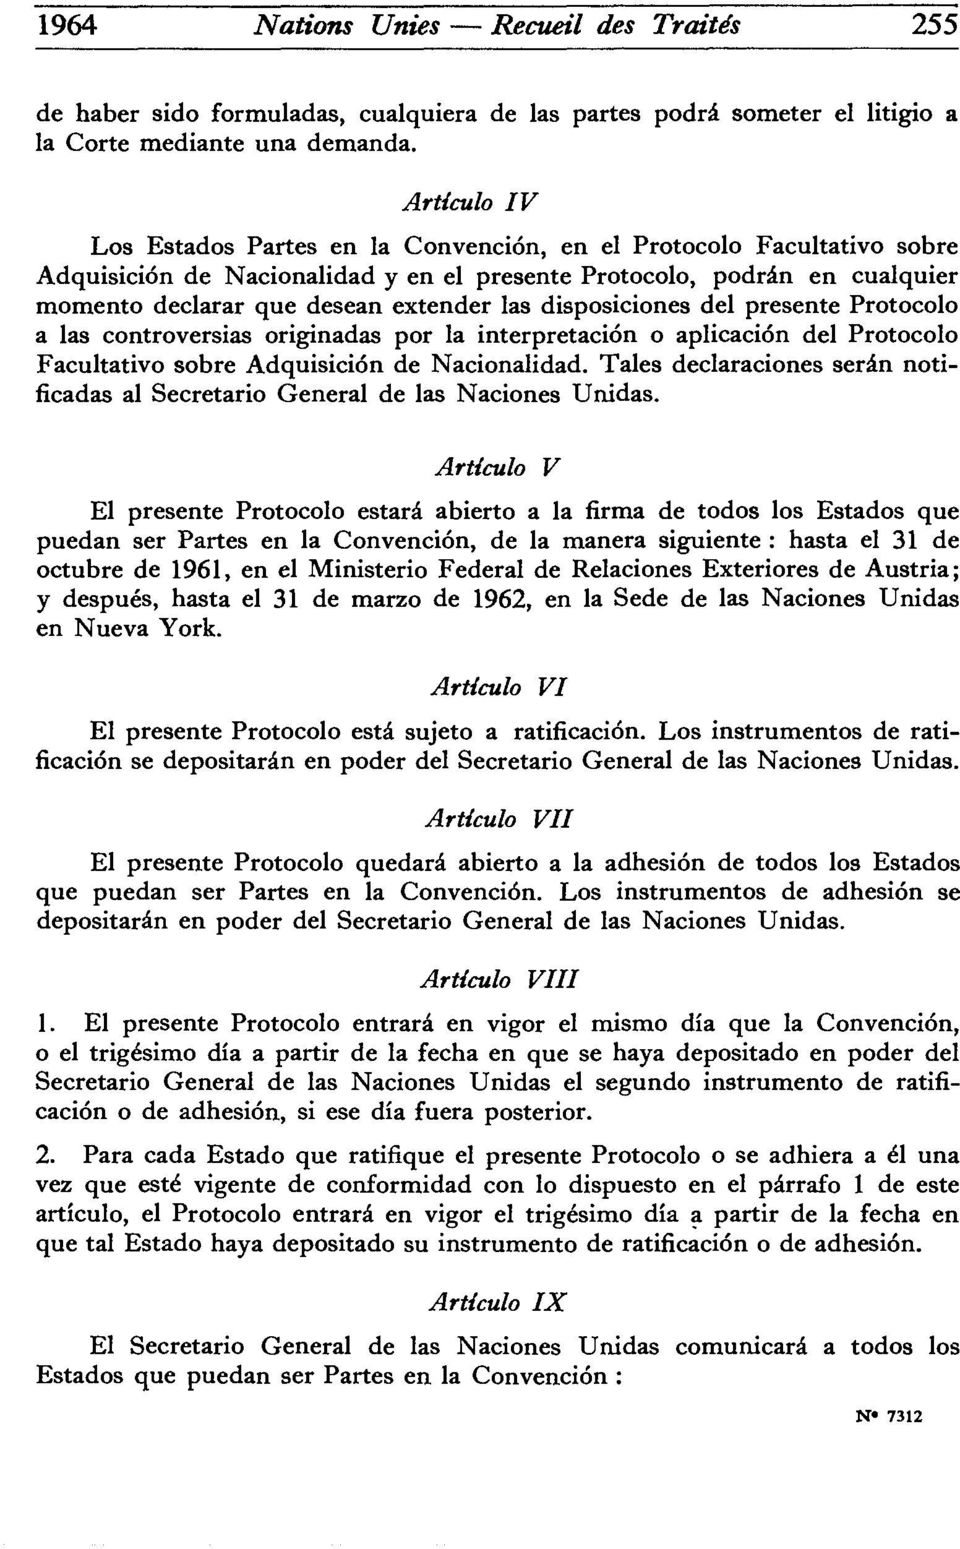 disposiciones del présente Protocolo a las controversias originadas por la interpretacion o aplicacion del Protocolo Facultative sobre Adquisicion de Nacionalidad.